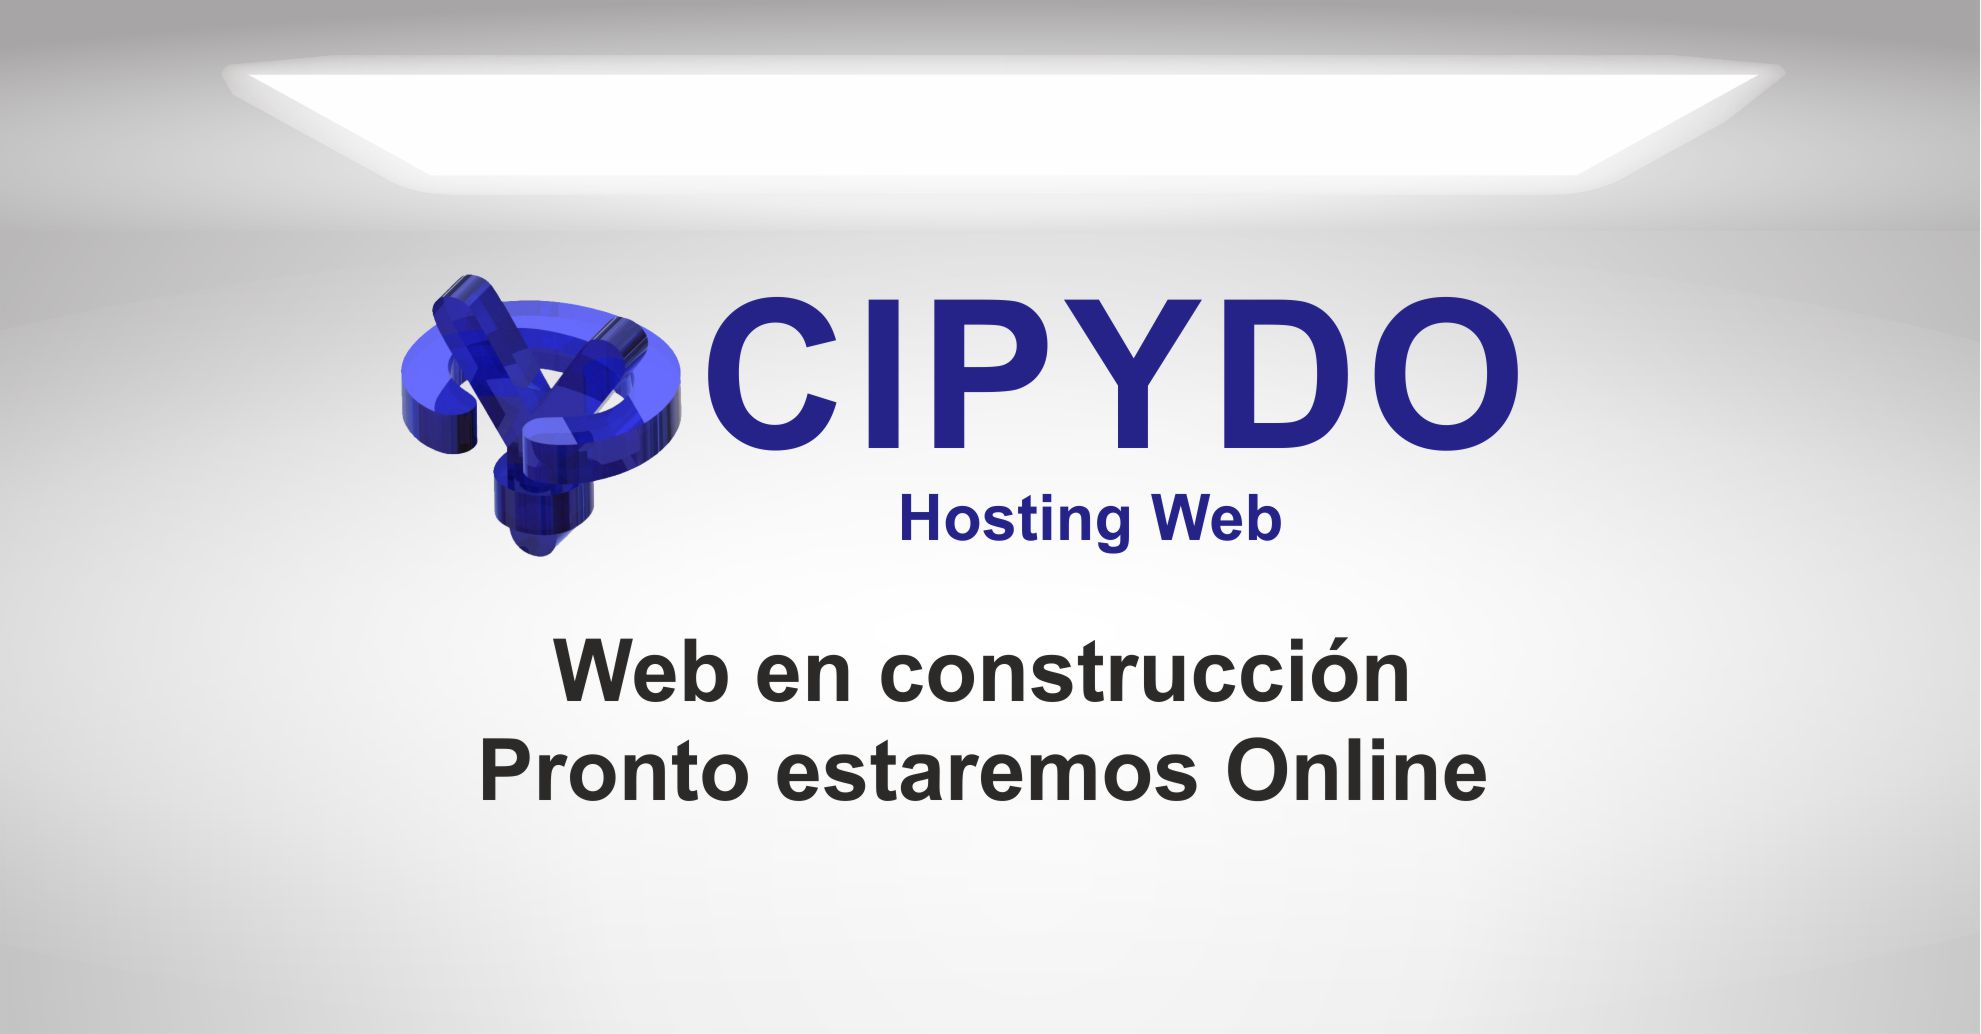 CIPYDO Hosting